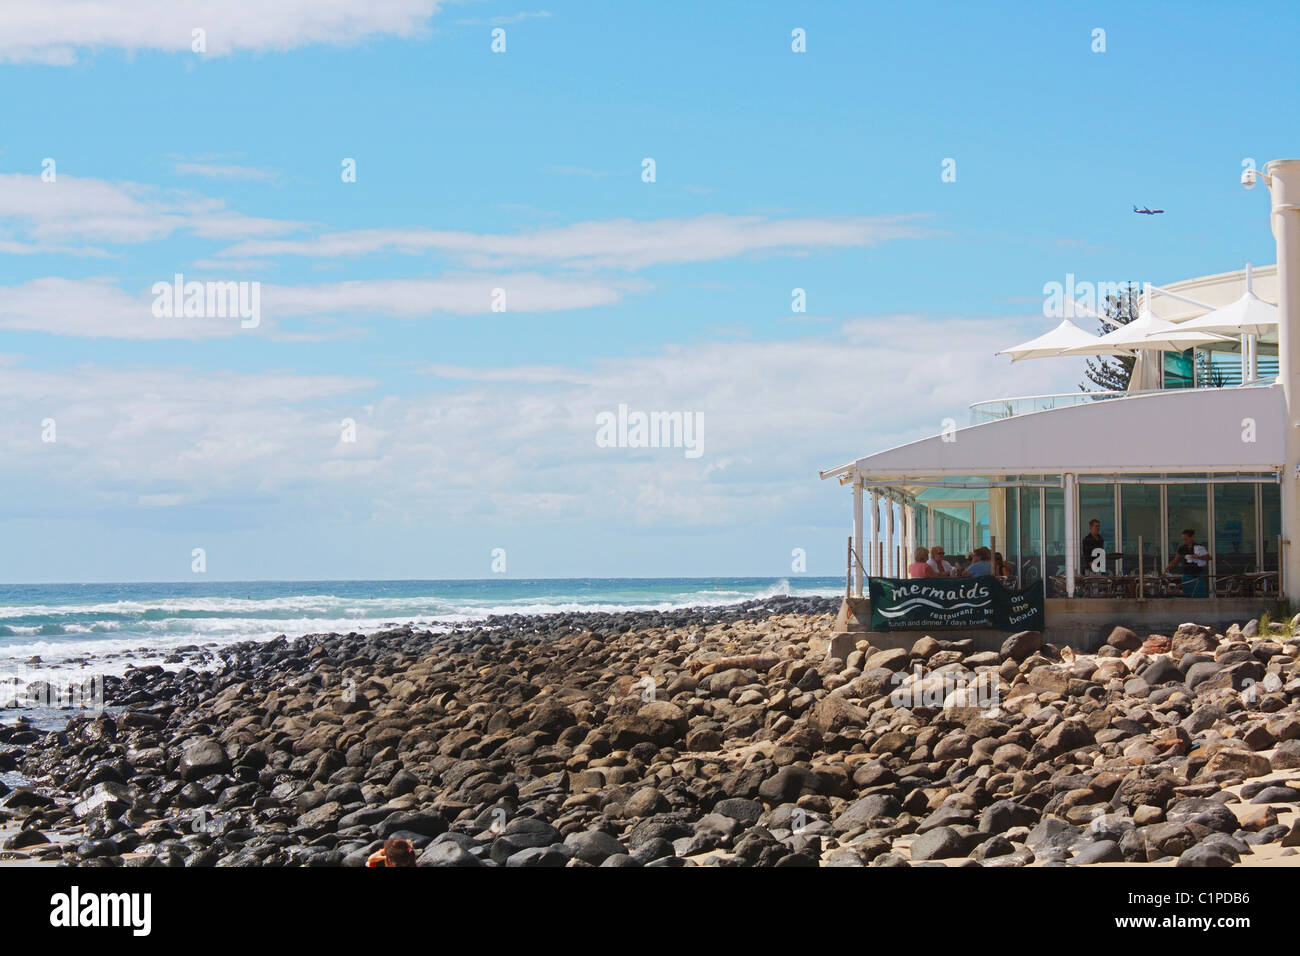 Australia, Burleigh Heads, restaurant on rocky beach Stock Photo